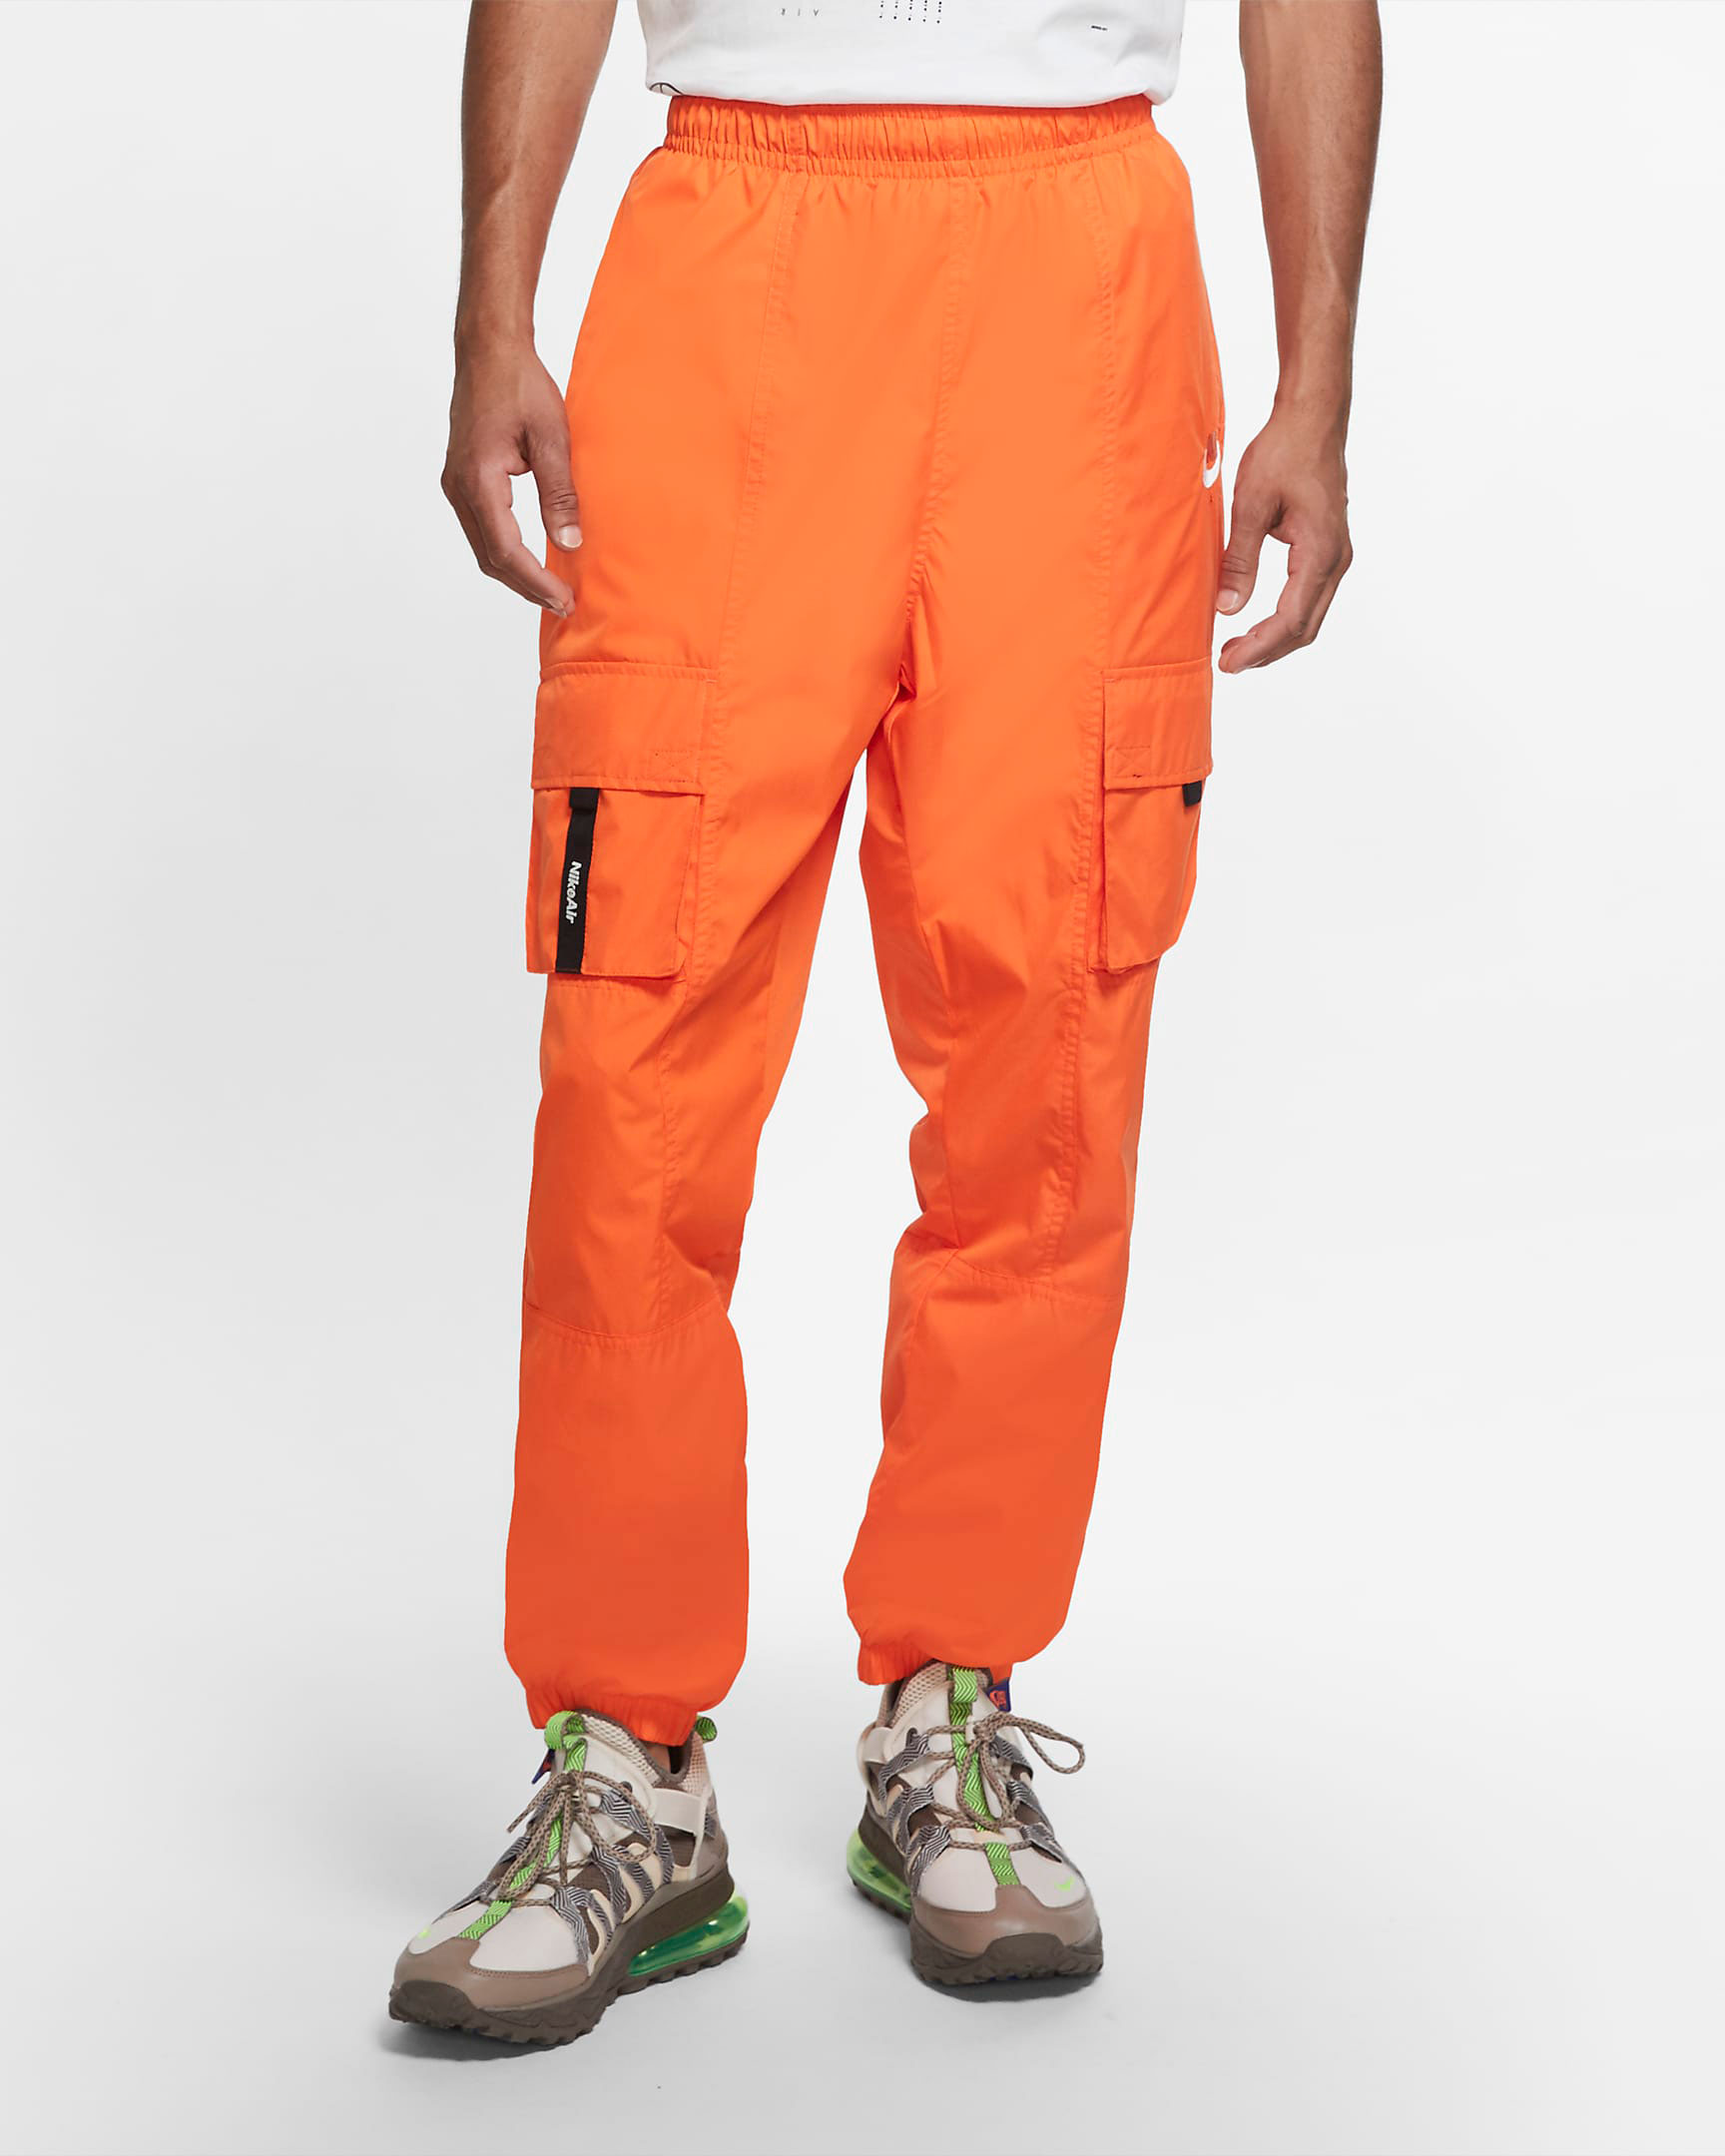 nike-air-cargo-pants-orange